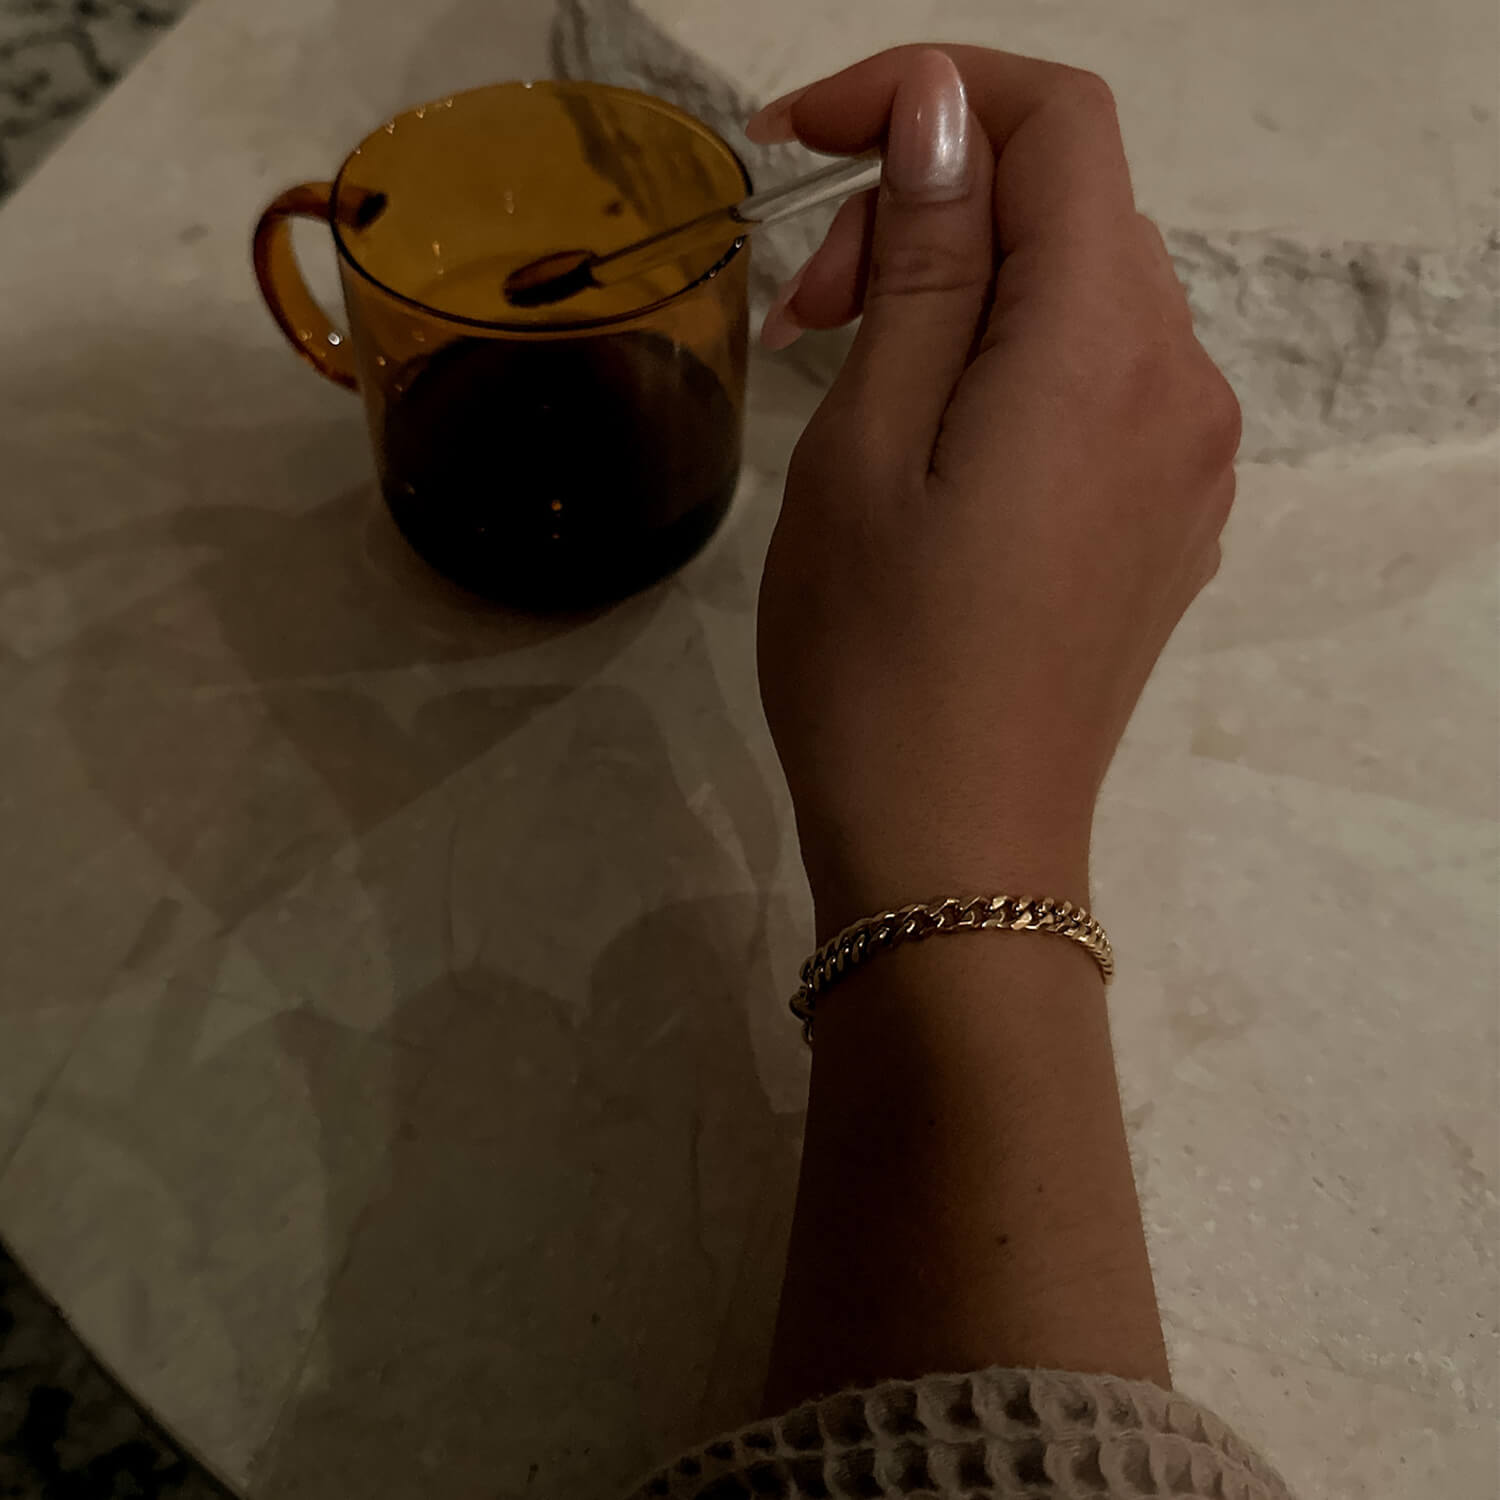 female wearing 5mm gold cuban link bracelet on wrist